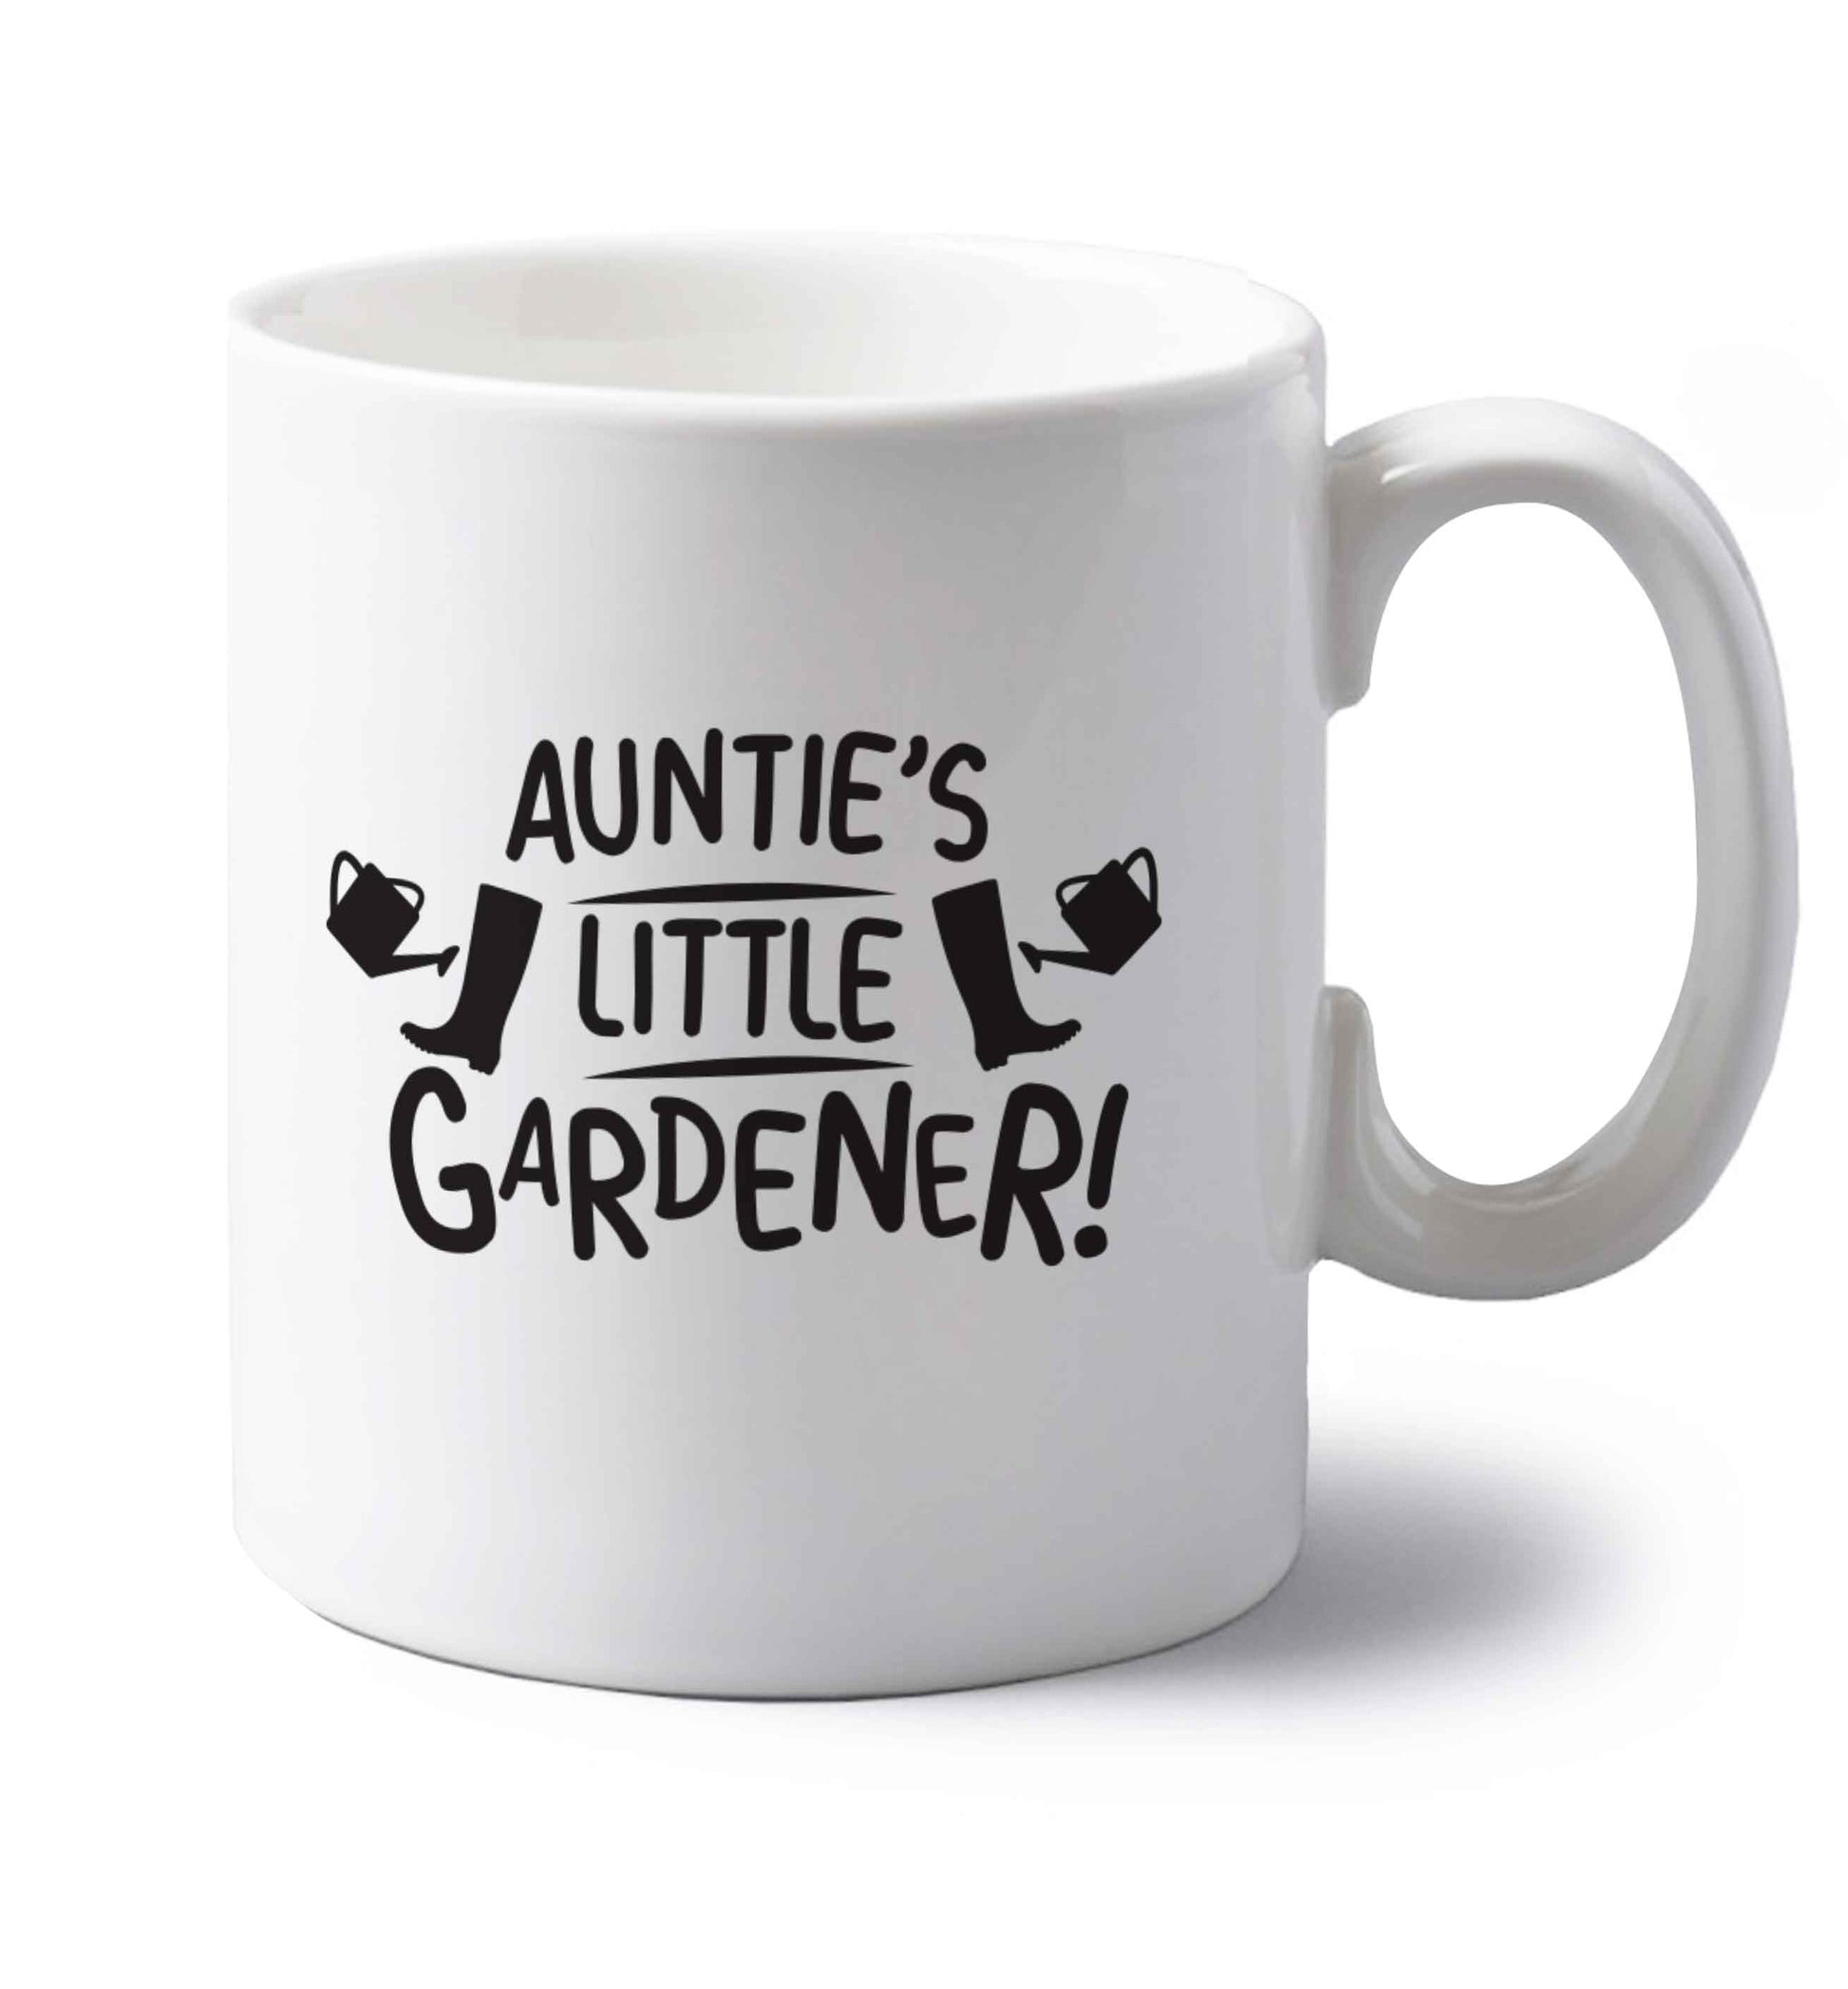 Auntie's little gardener left handed white ceramic mug 